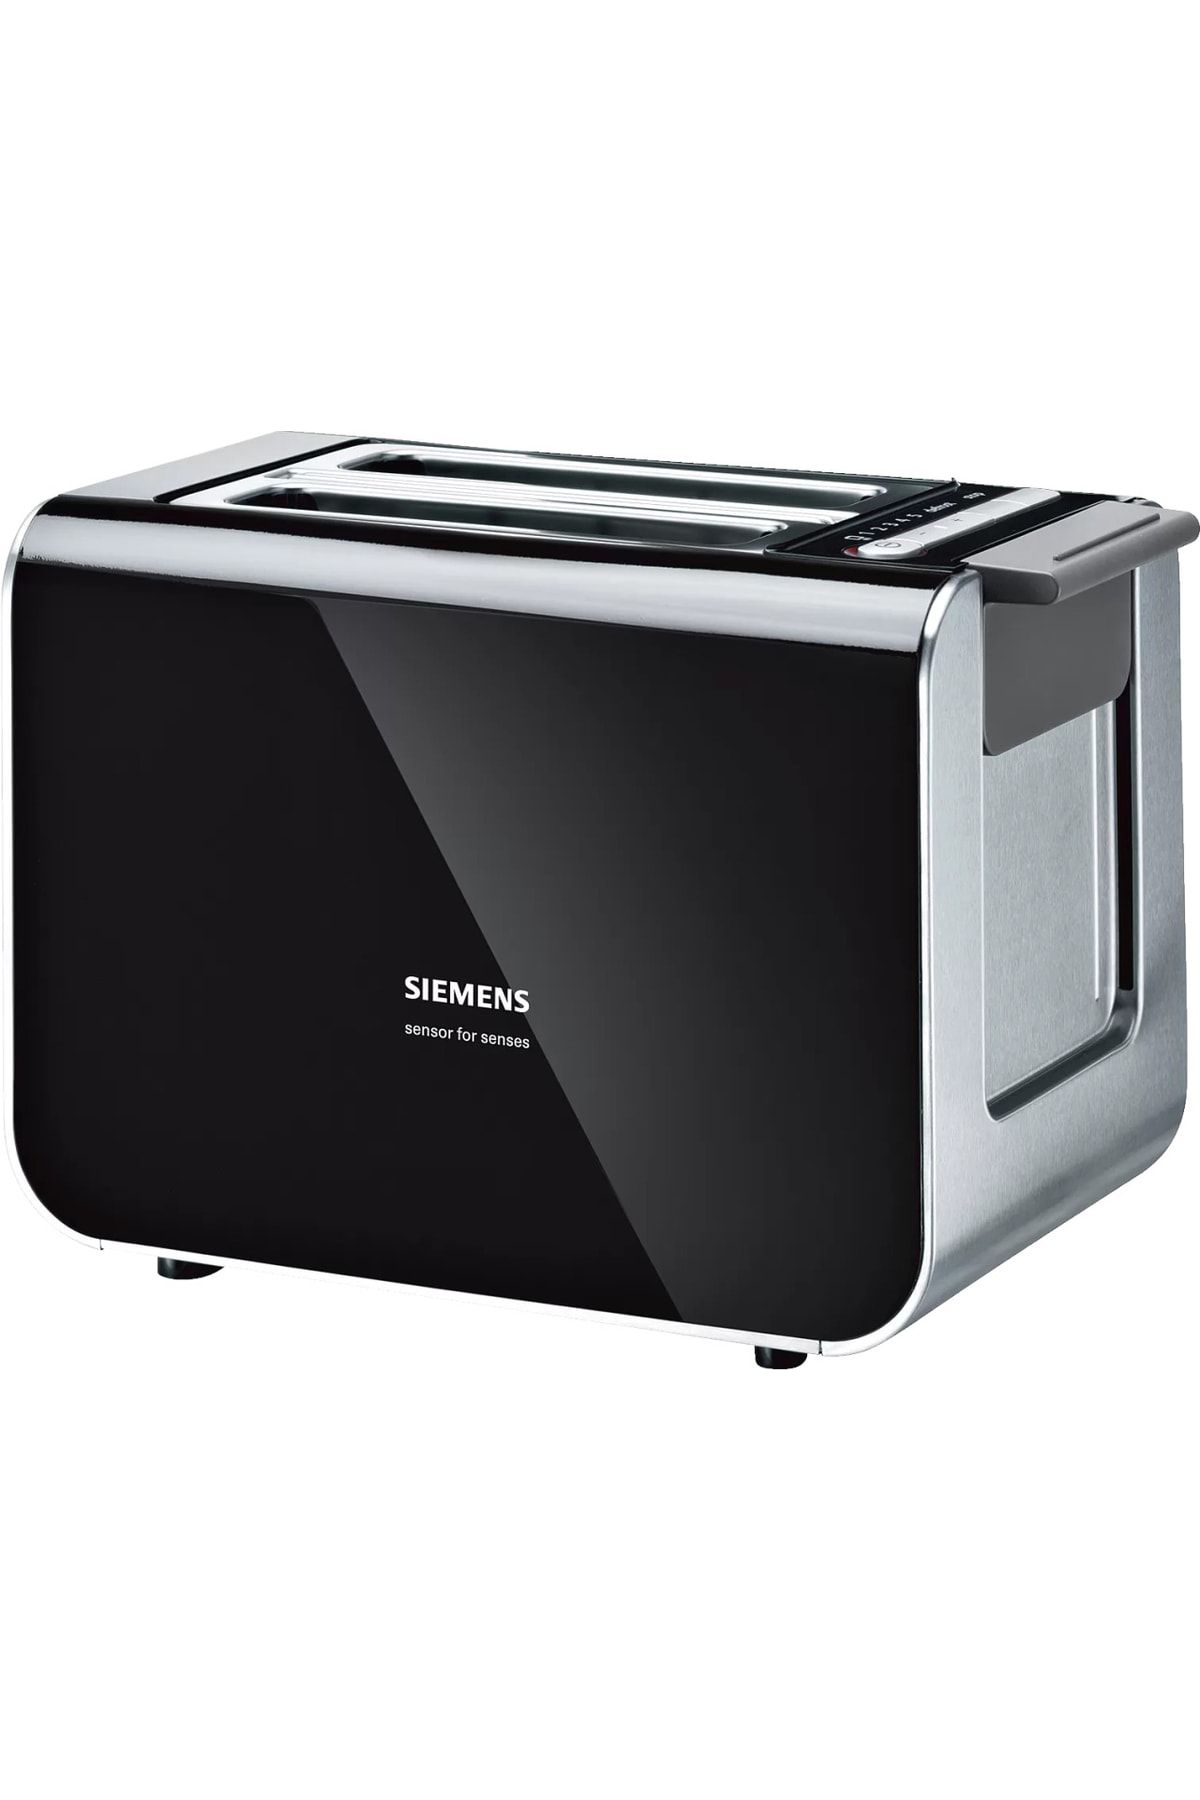 Siemens TT86103 860 W Çift Gözlü Ekmek Kızartma Makinesi